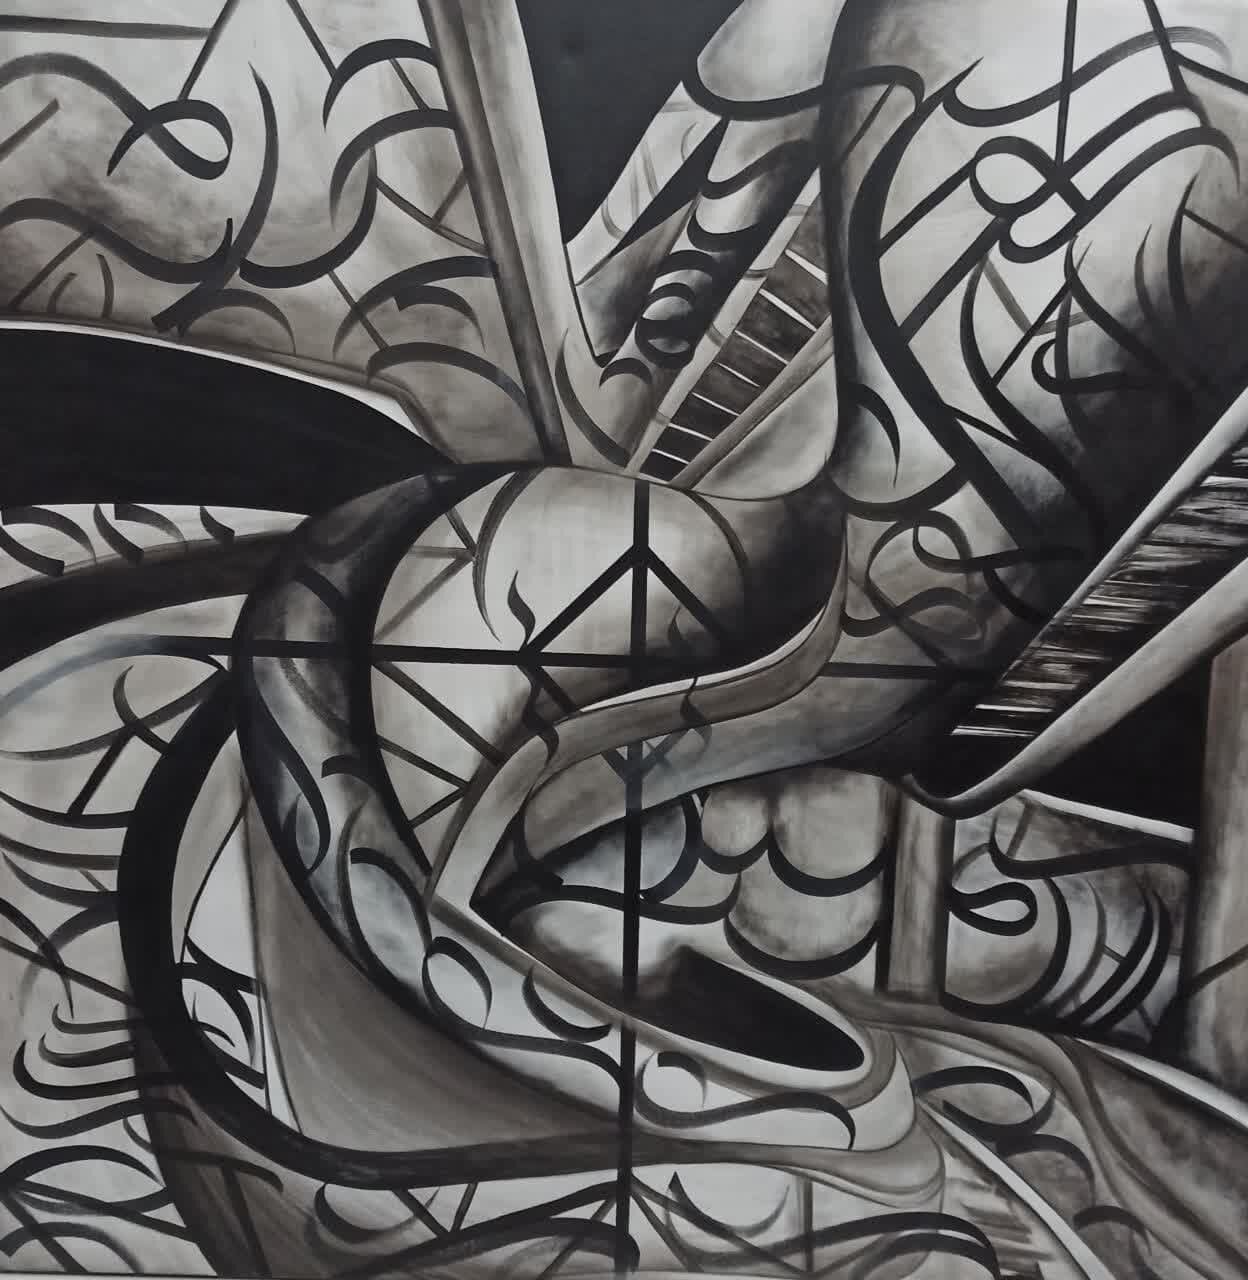 بیان معاصر تلفیق هنر نقاشی و خط در نمایشگاه «دهلیز ۲»